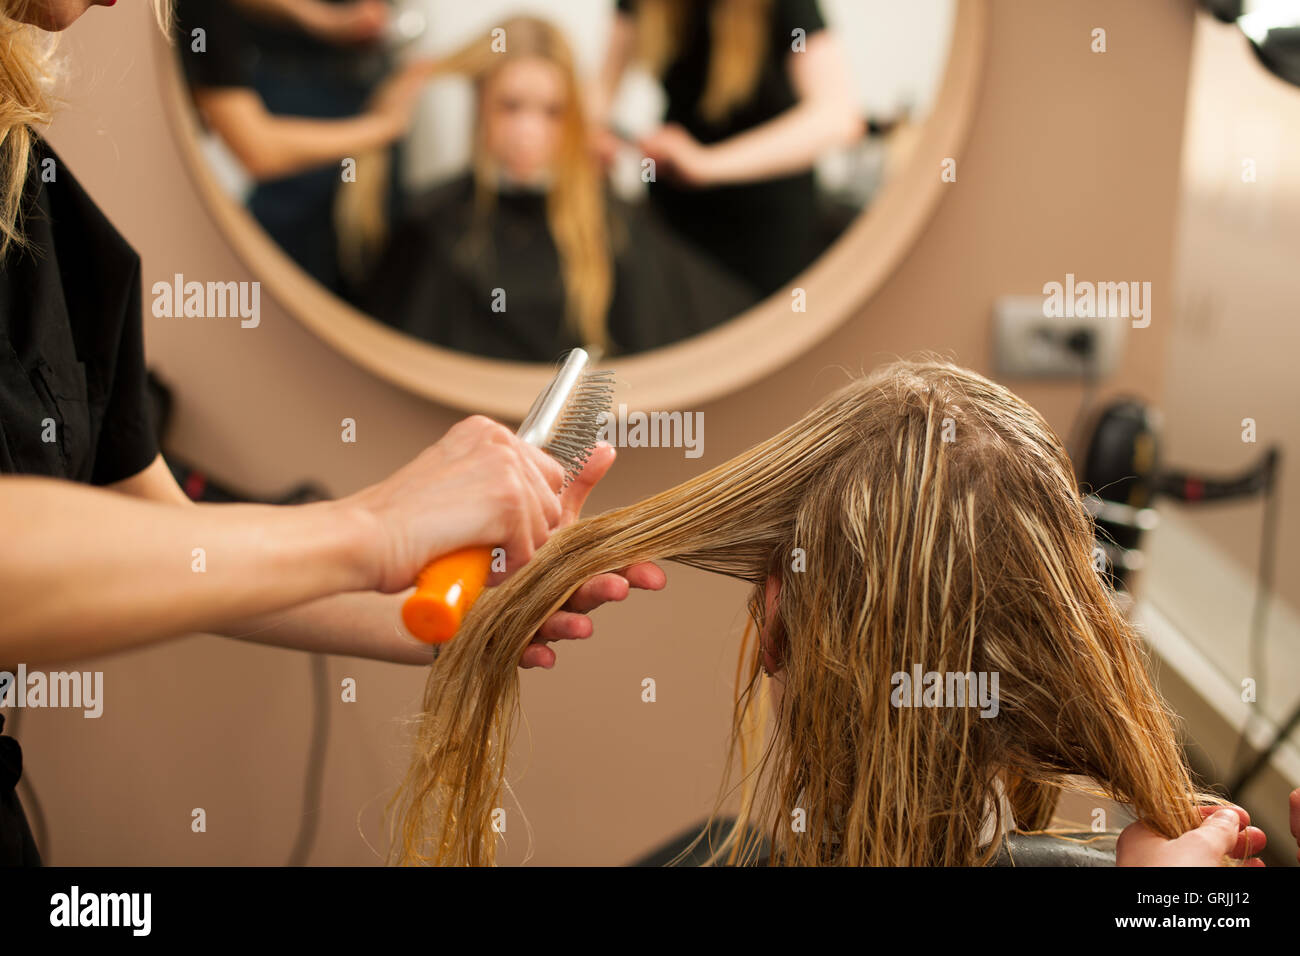 Friseur am Arbeitsplatz - Kämmen Haare an den Kunden zuvor Frisur in einem professionellen Salon Friseur Stockfoto